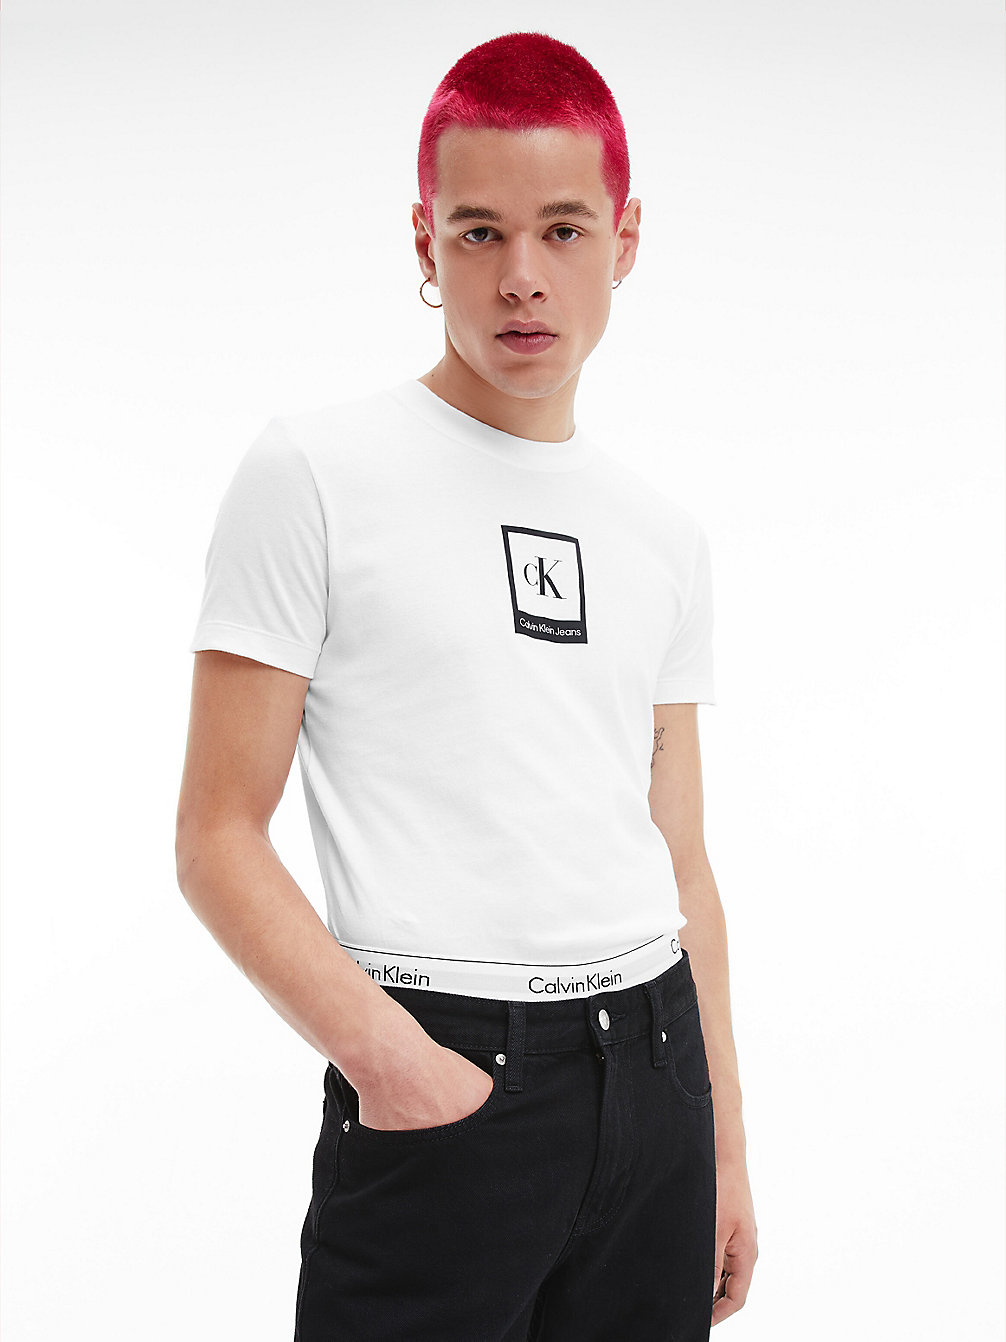 BRIGHT WHITE Schmales Logo-T-Shirt Aus Bio-Baumwolle undefined Herren Calvin Klein